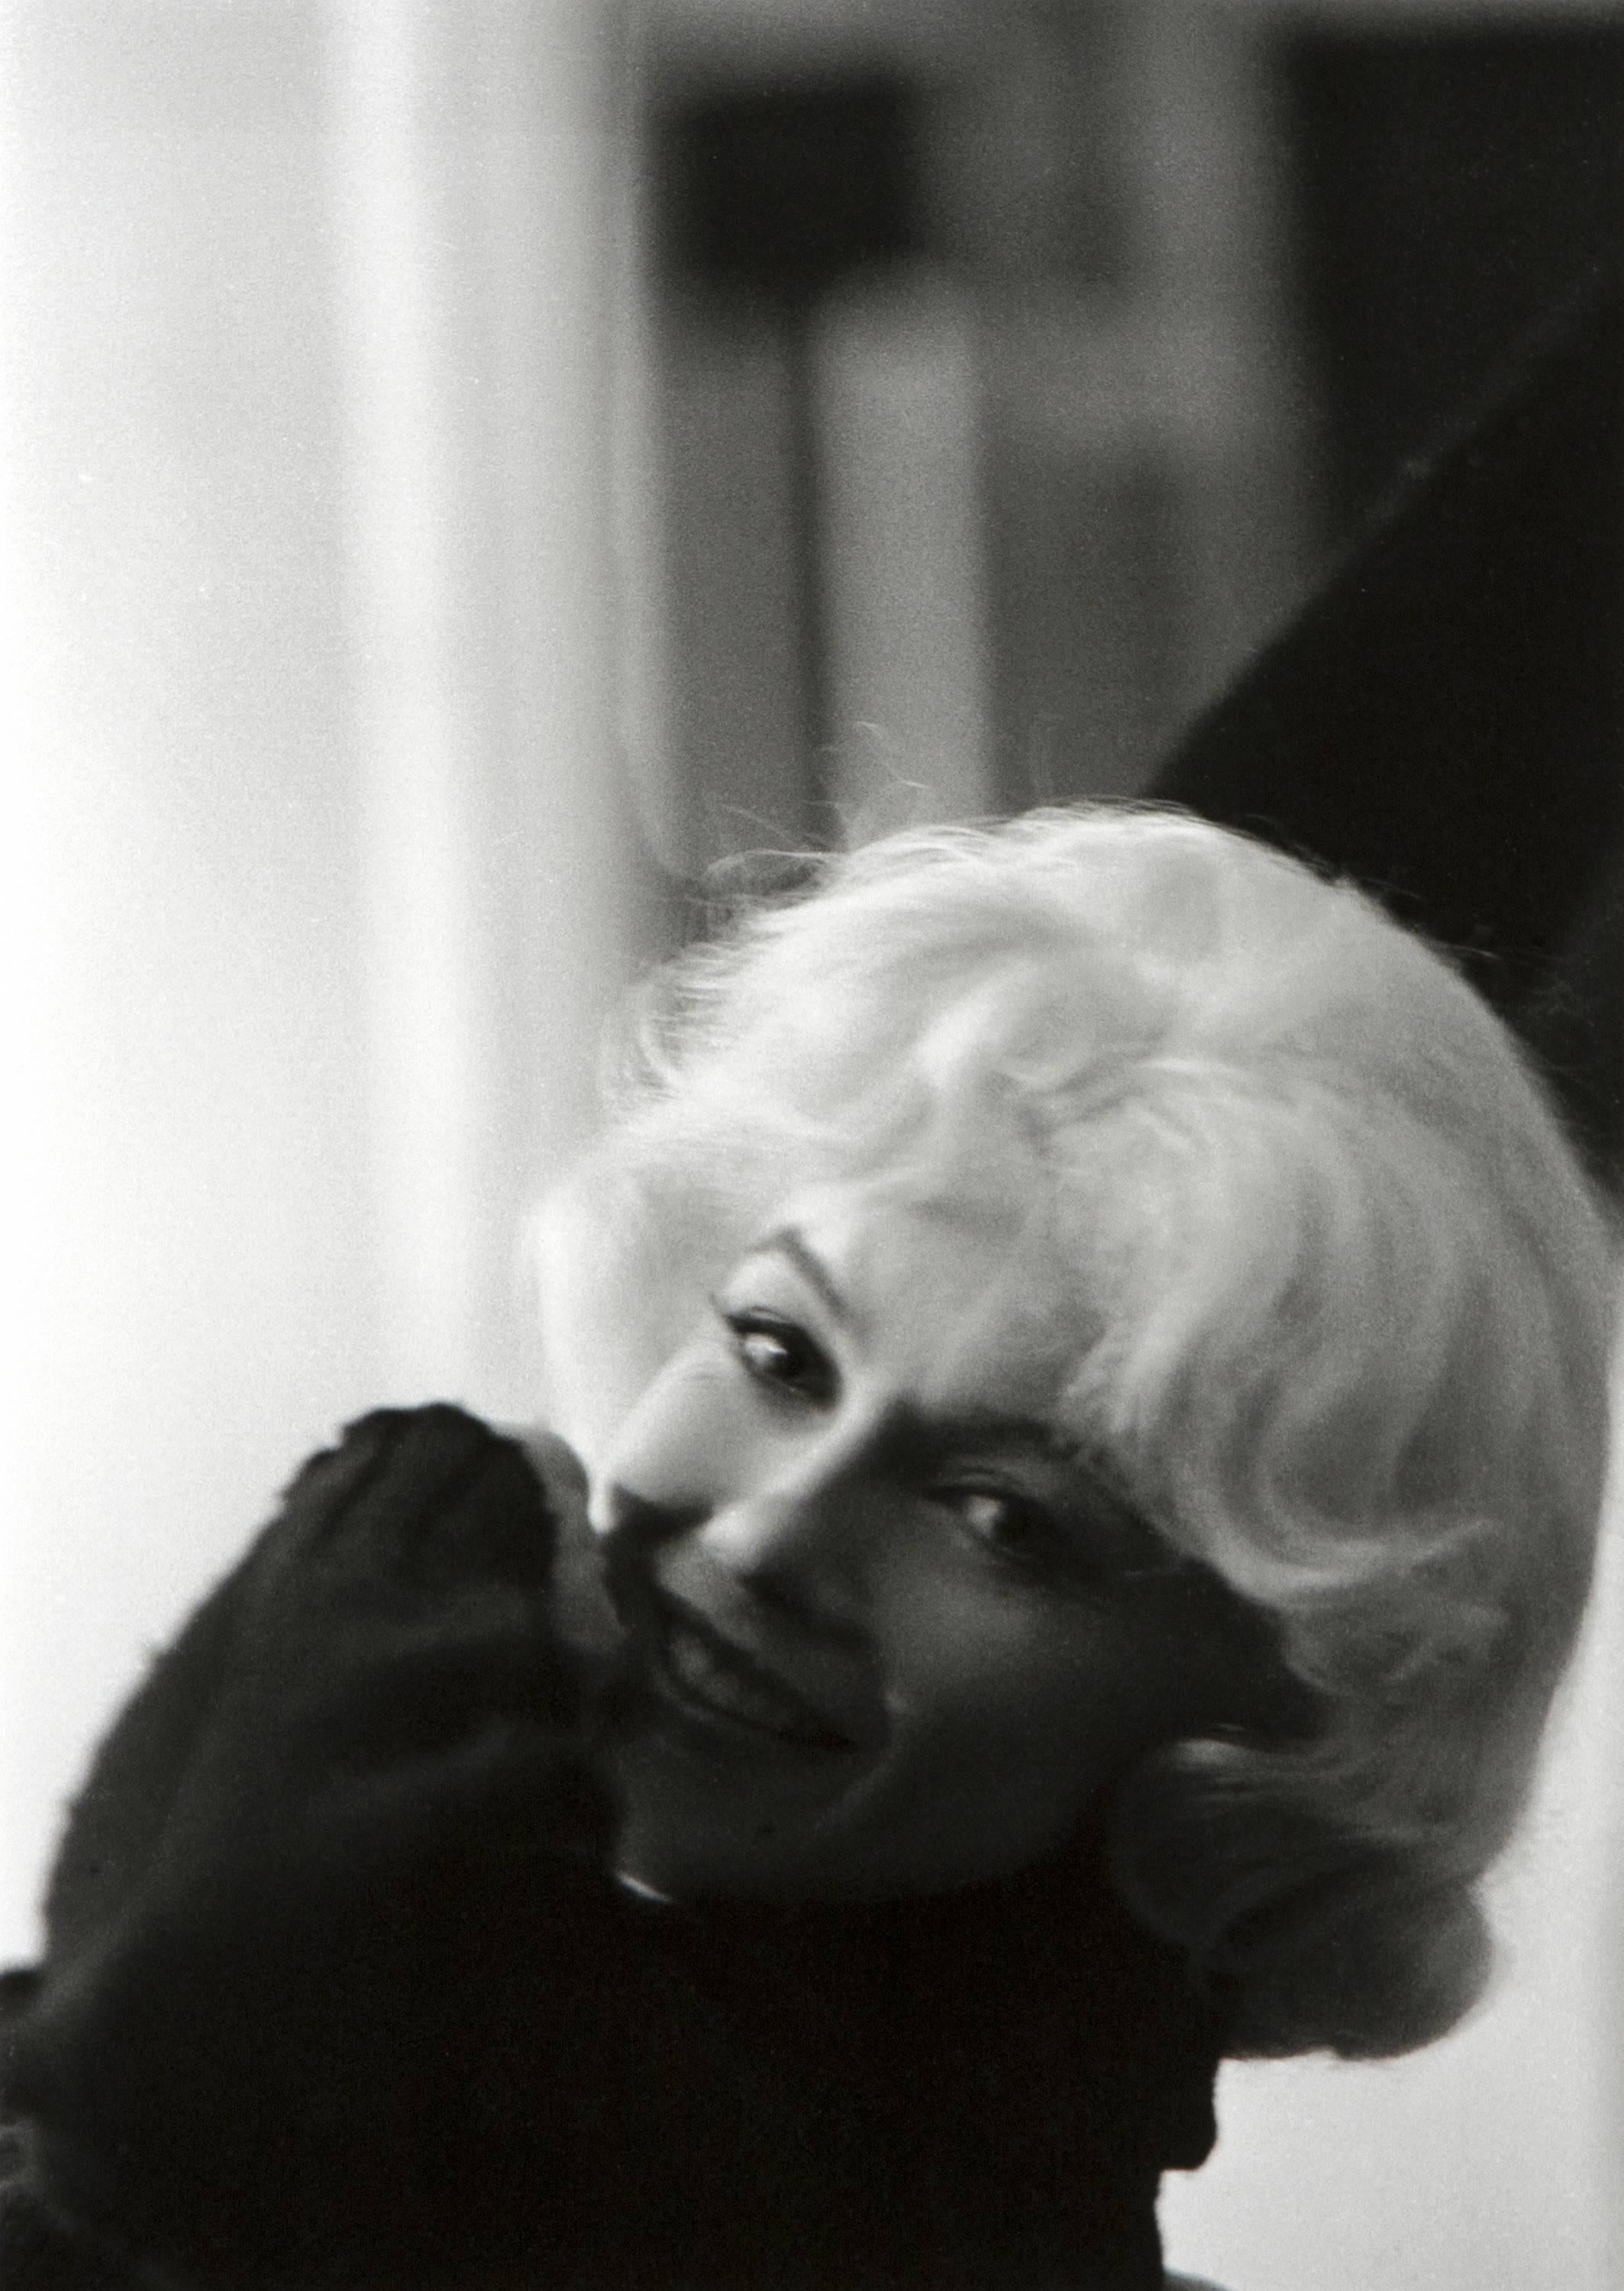 « Let's Make Love », Marilyn Monroe